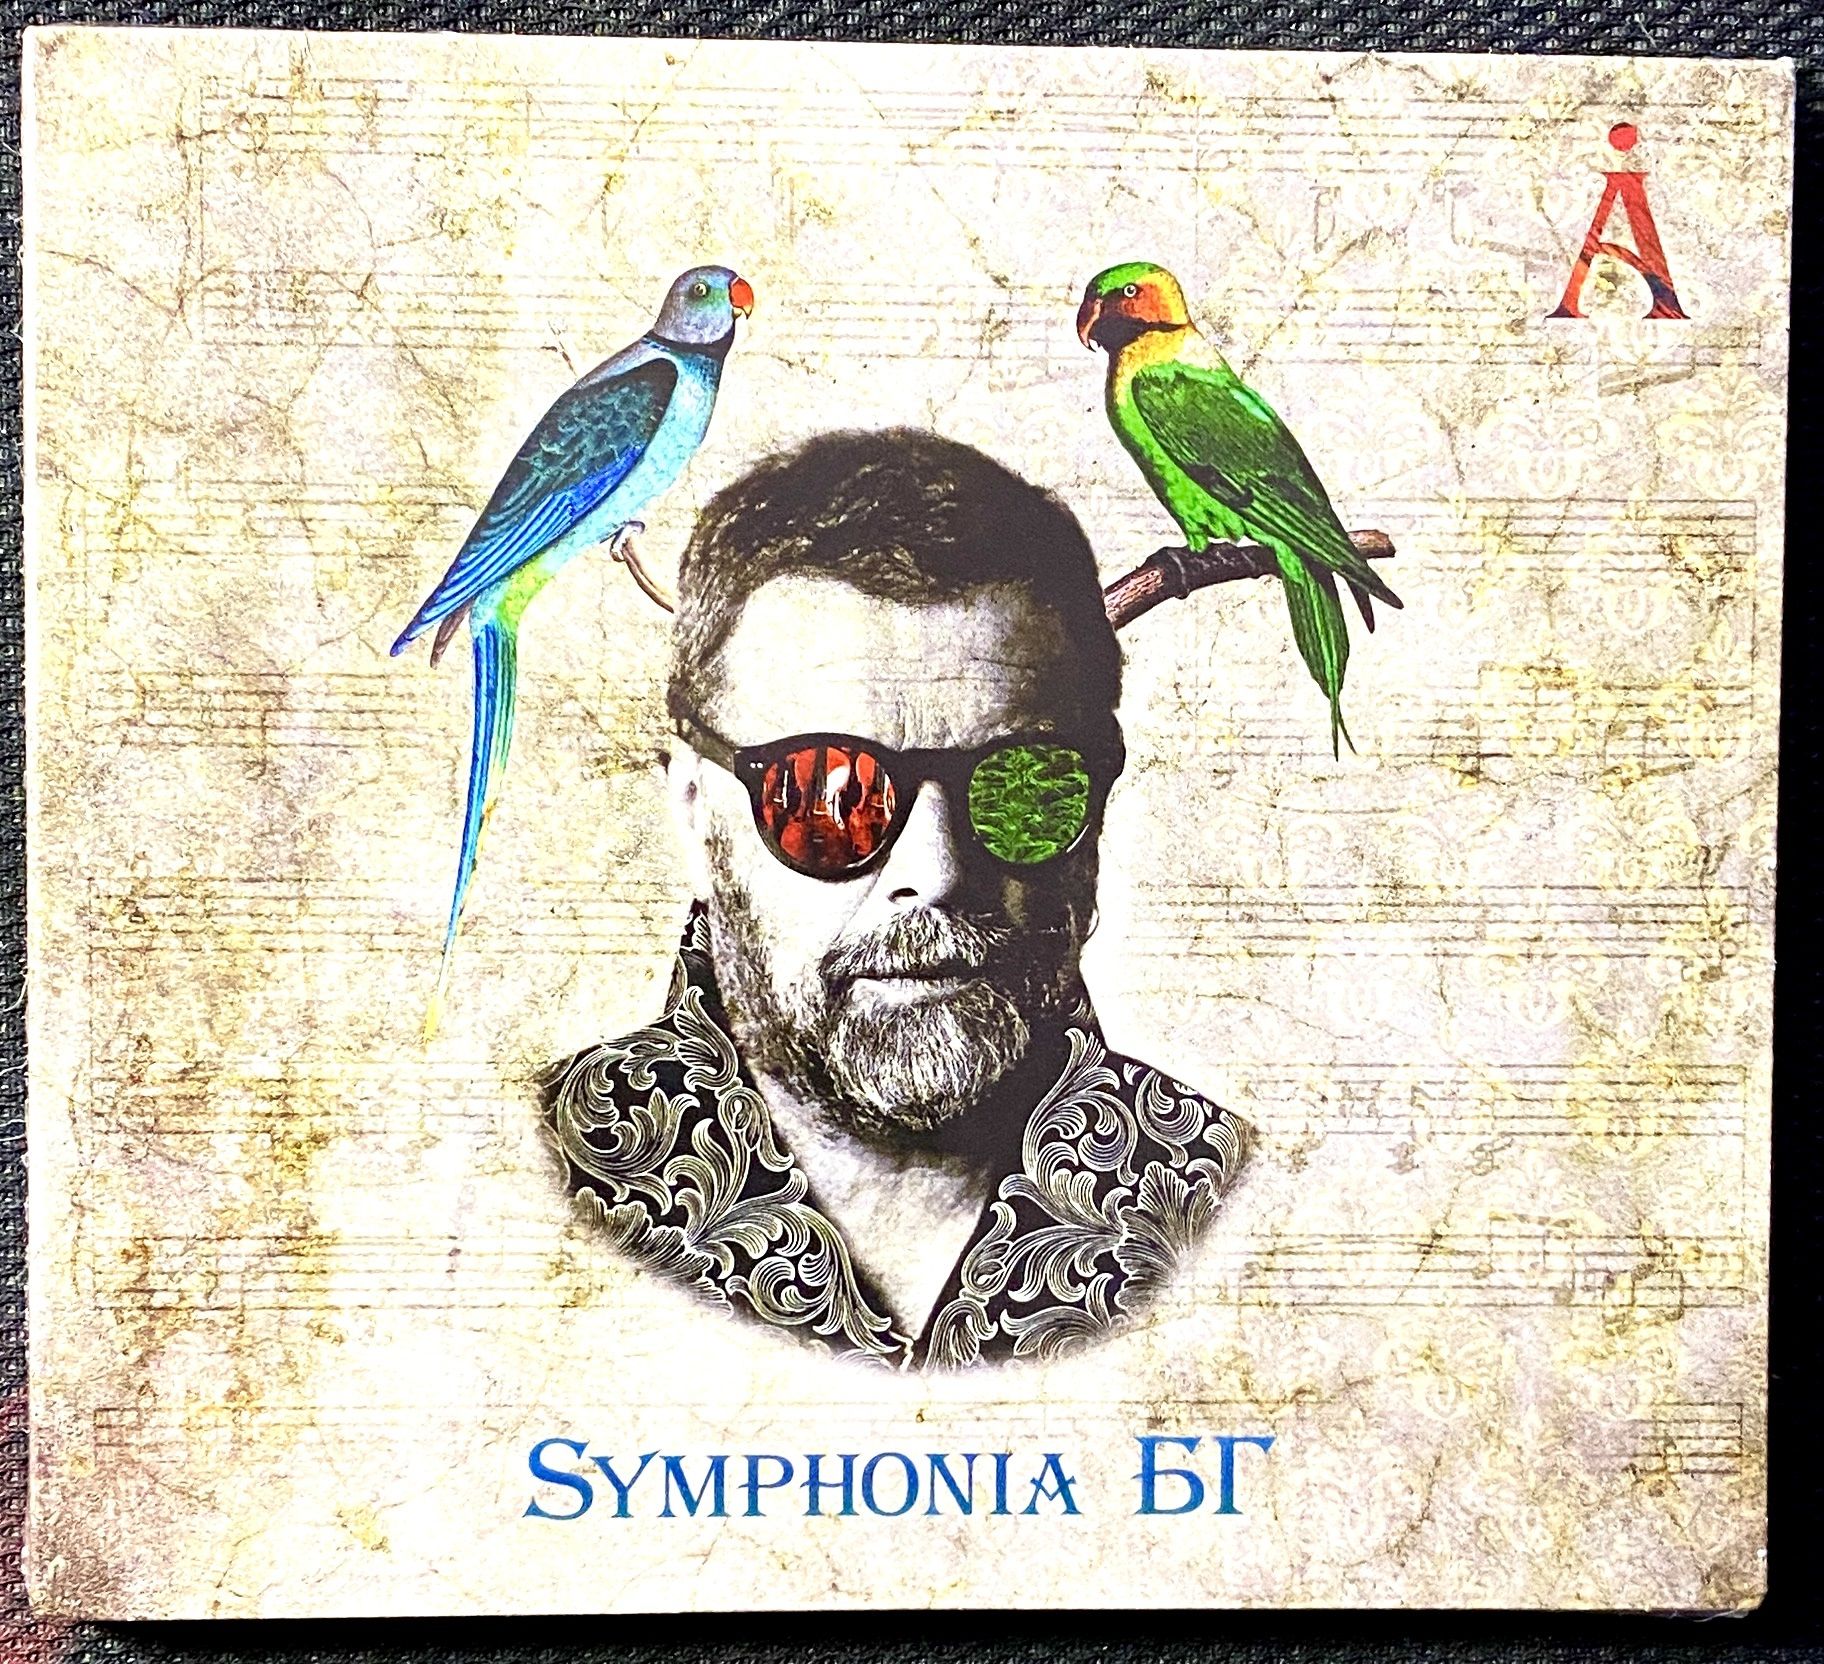 Б г 2017. Аквариум - Symphonia БГ обложка.